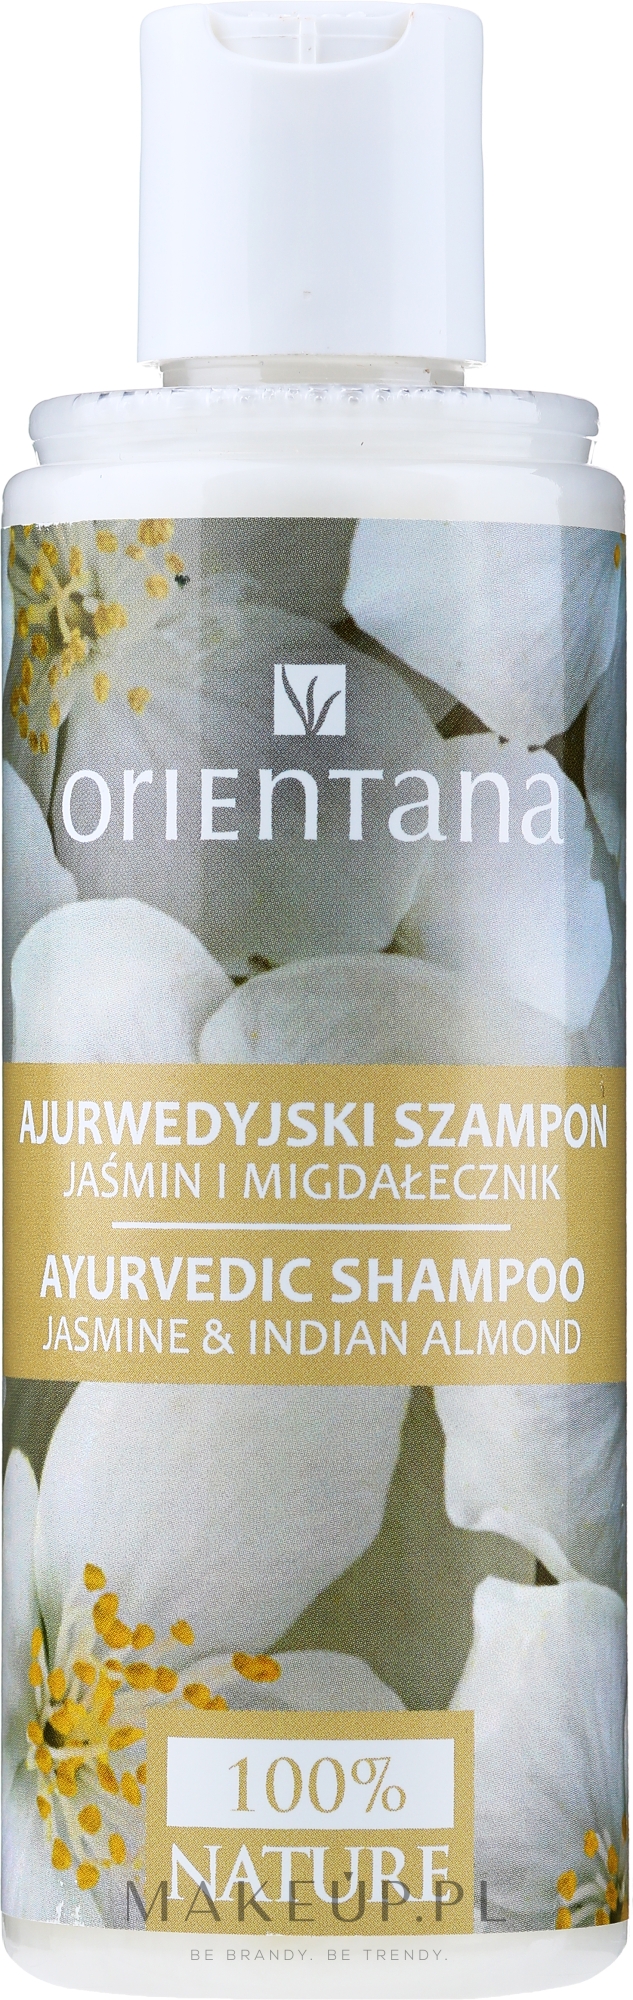 orientana szampon jasmin wizaz